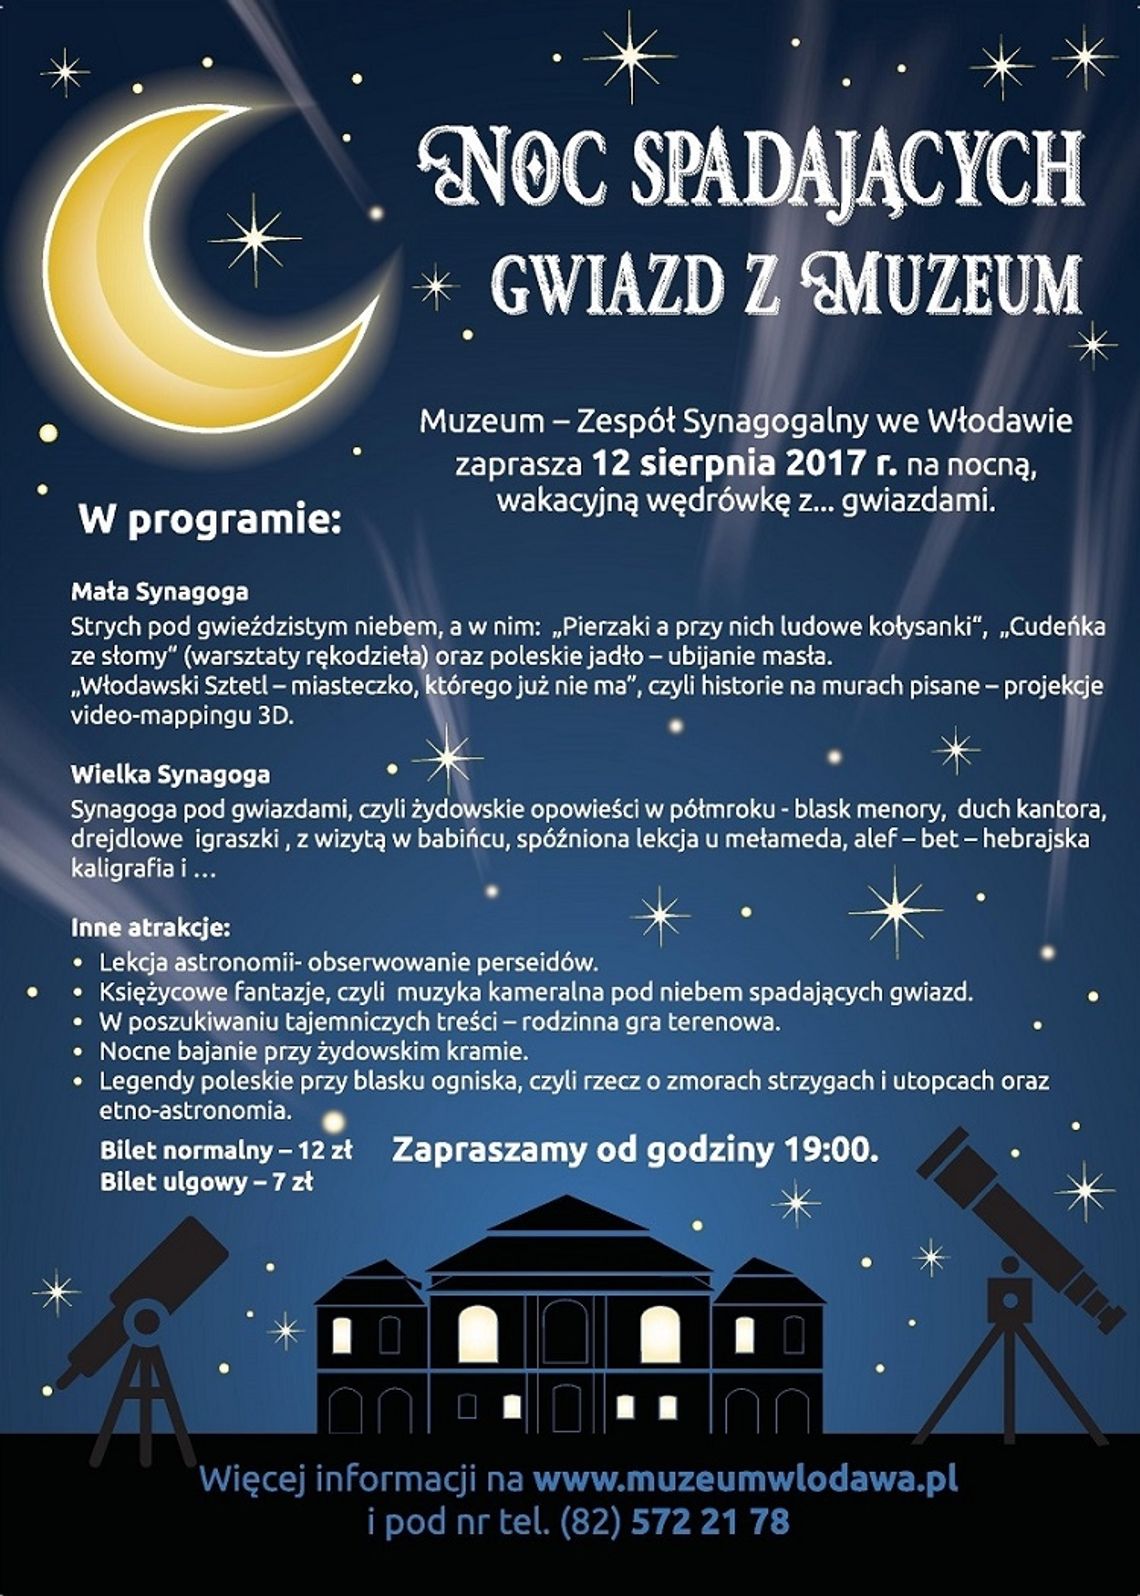 Noc Spadających Gwiazd z Muzeum we Włodawie